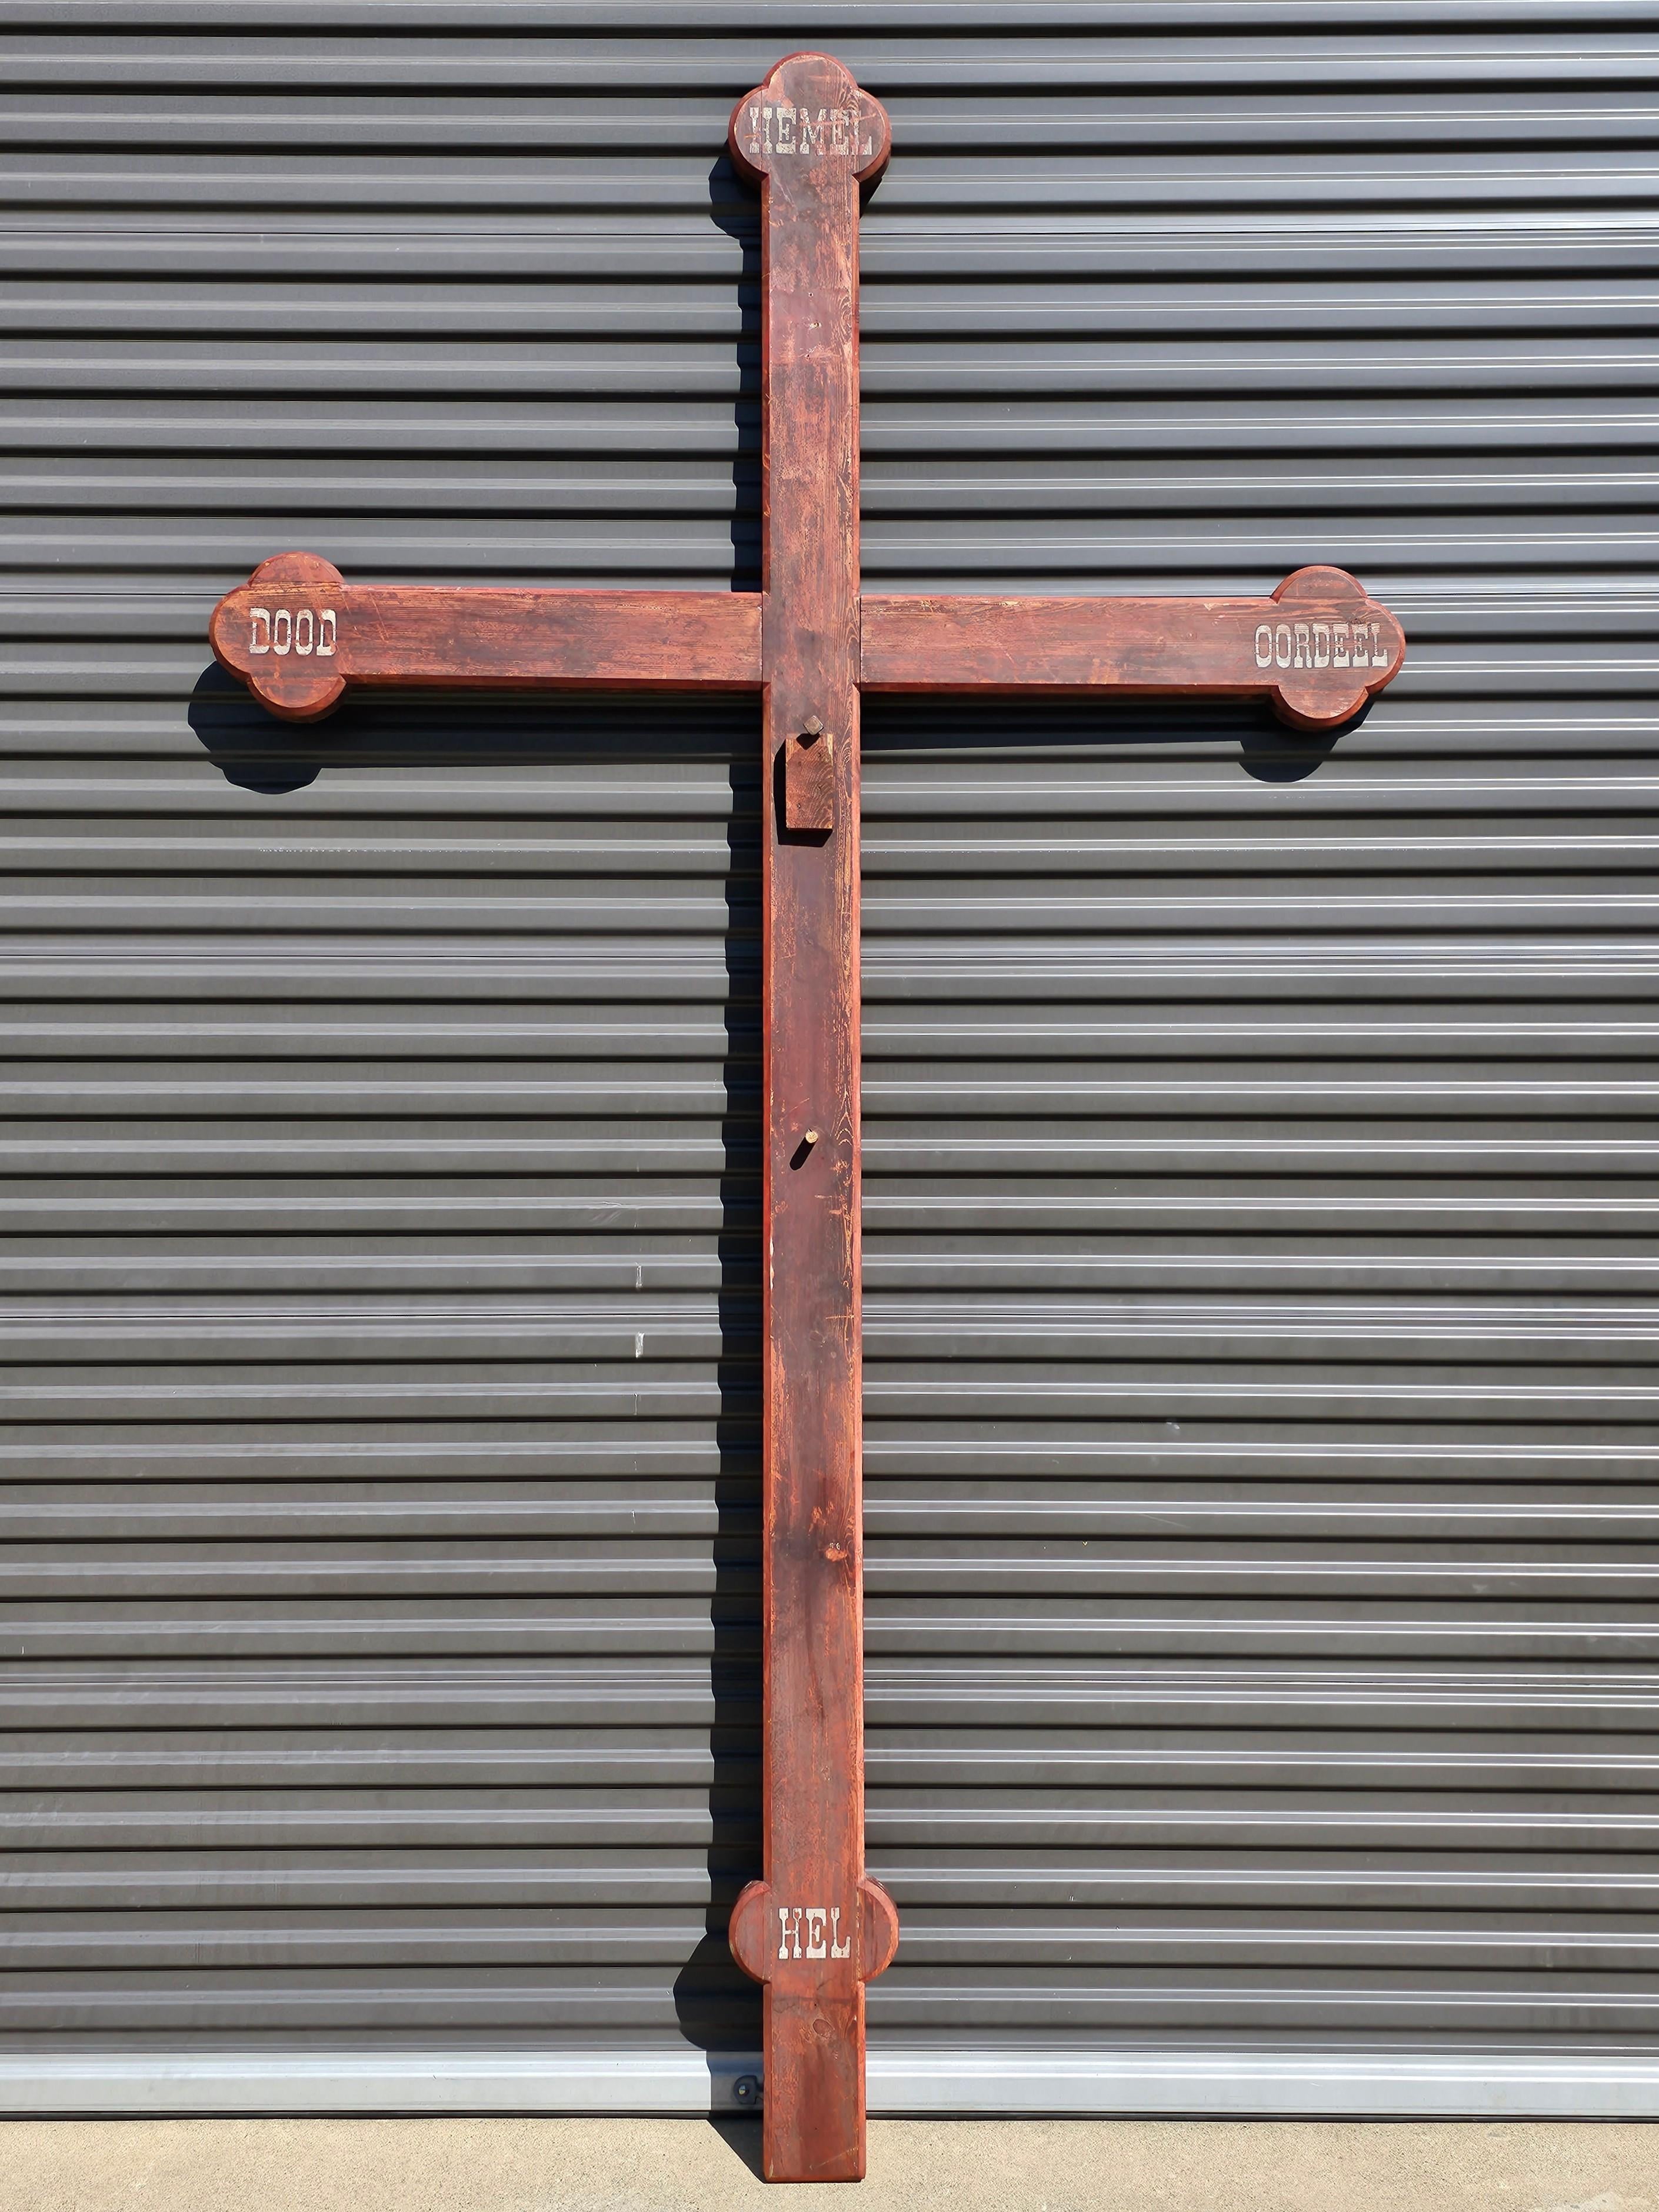 Eine massive fast 10 Fuß hoch und 5,5 Fuß breit antiken niederländischen kirchlichen Holzkreuz.

Handgefertigt in den Niederlanden im 19. Jahrhundert, sehr große skulpturale keltische Kreuzform, ursprünglich als Kruzifix montiert, mit der originalen